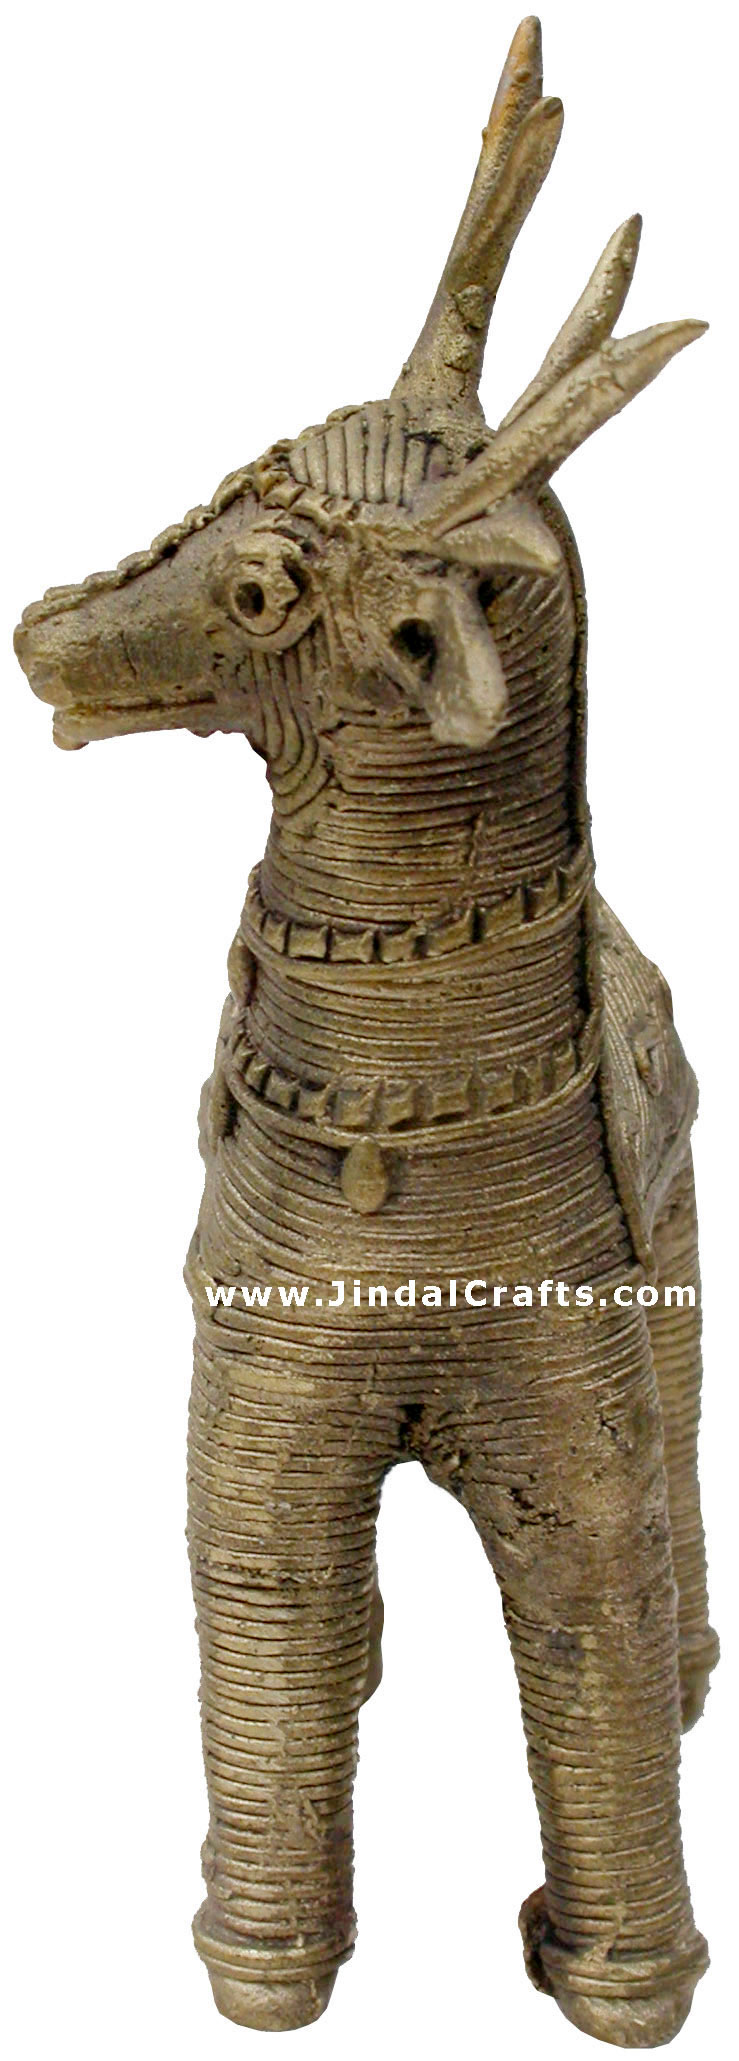 Deer - Tribal Dhokra Metal Animal Artifact from India